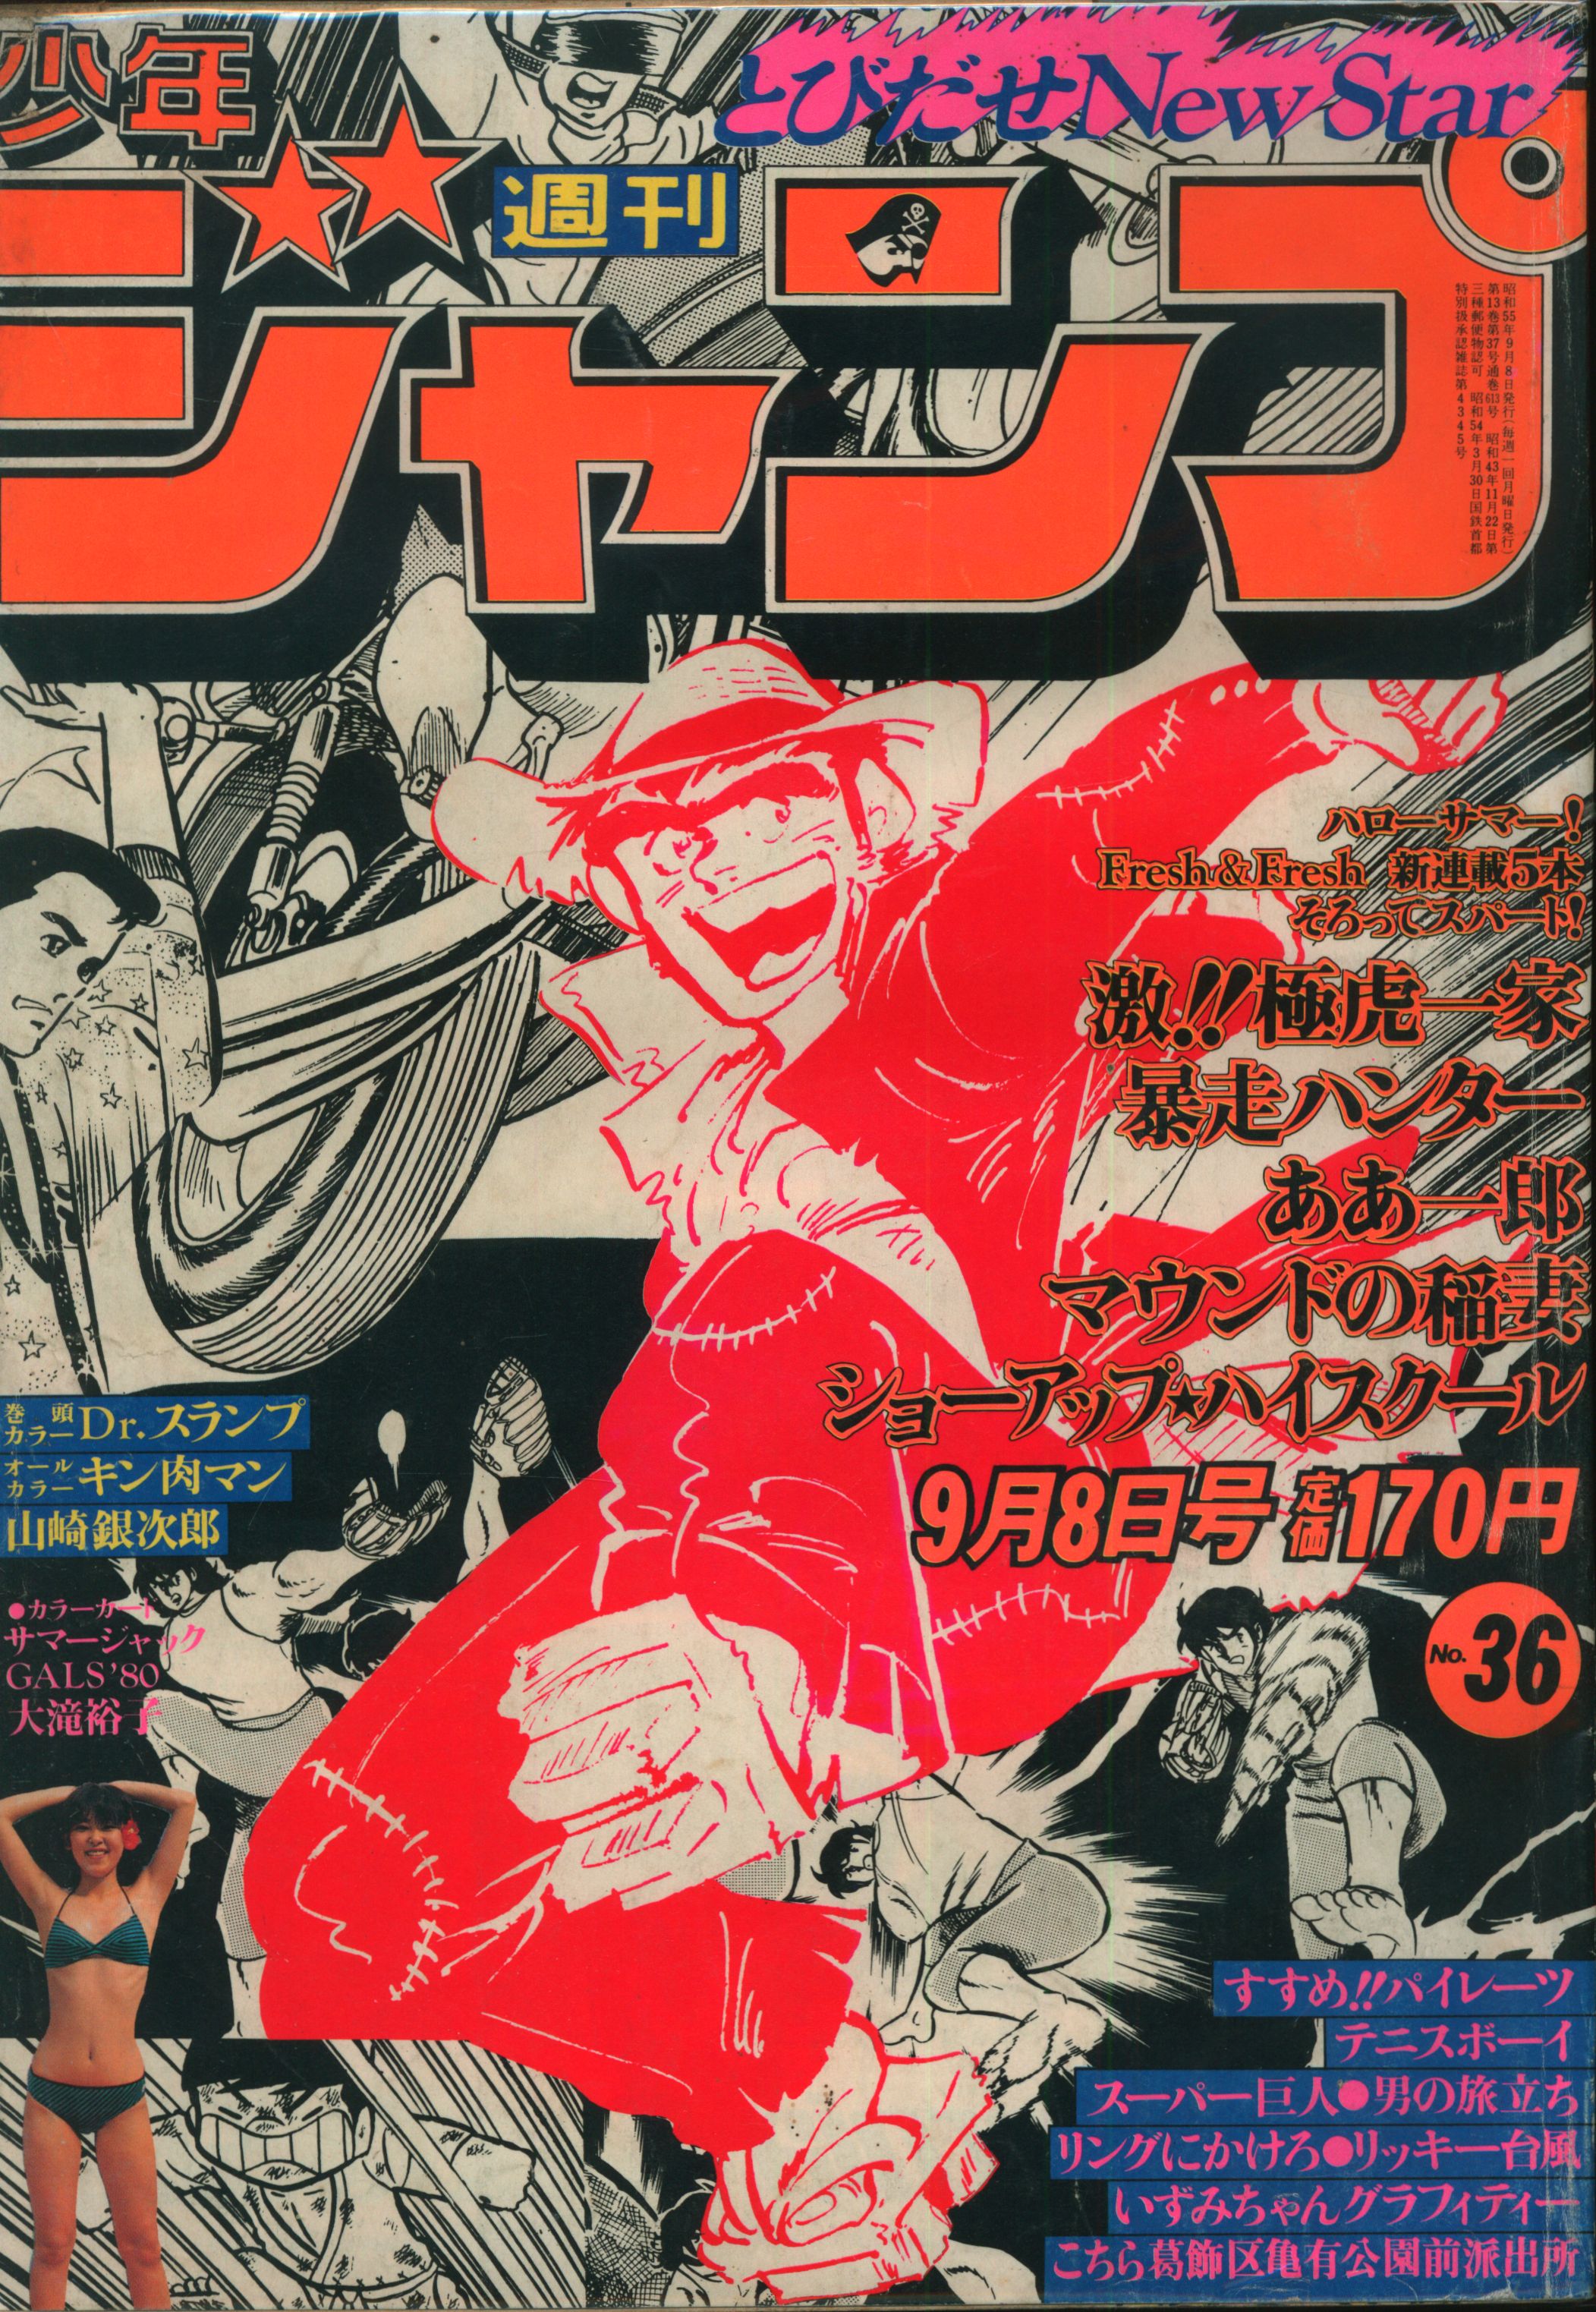 集英社 1980年 昭和55年 の漫画雑誌 週刊少年ジャンプ 1980年 昭和55年 36 8036 まんだらけ Mandarake